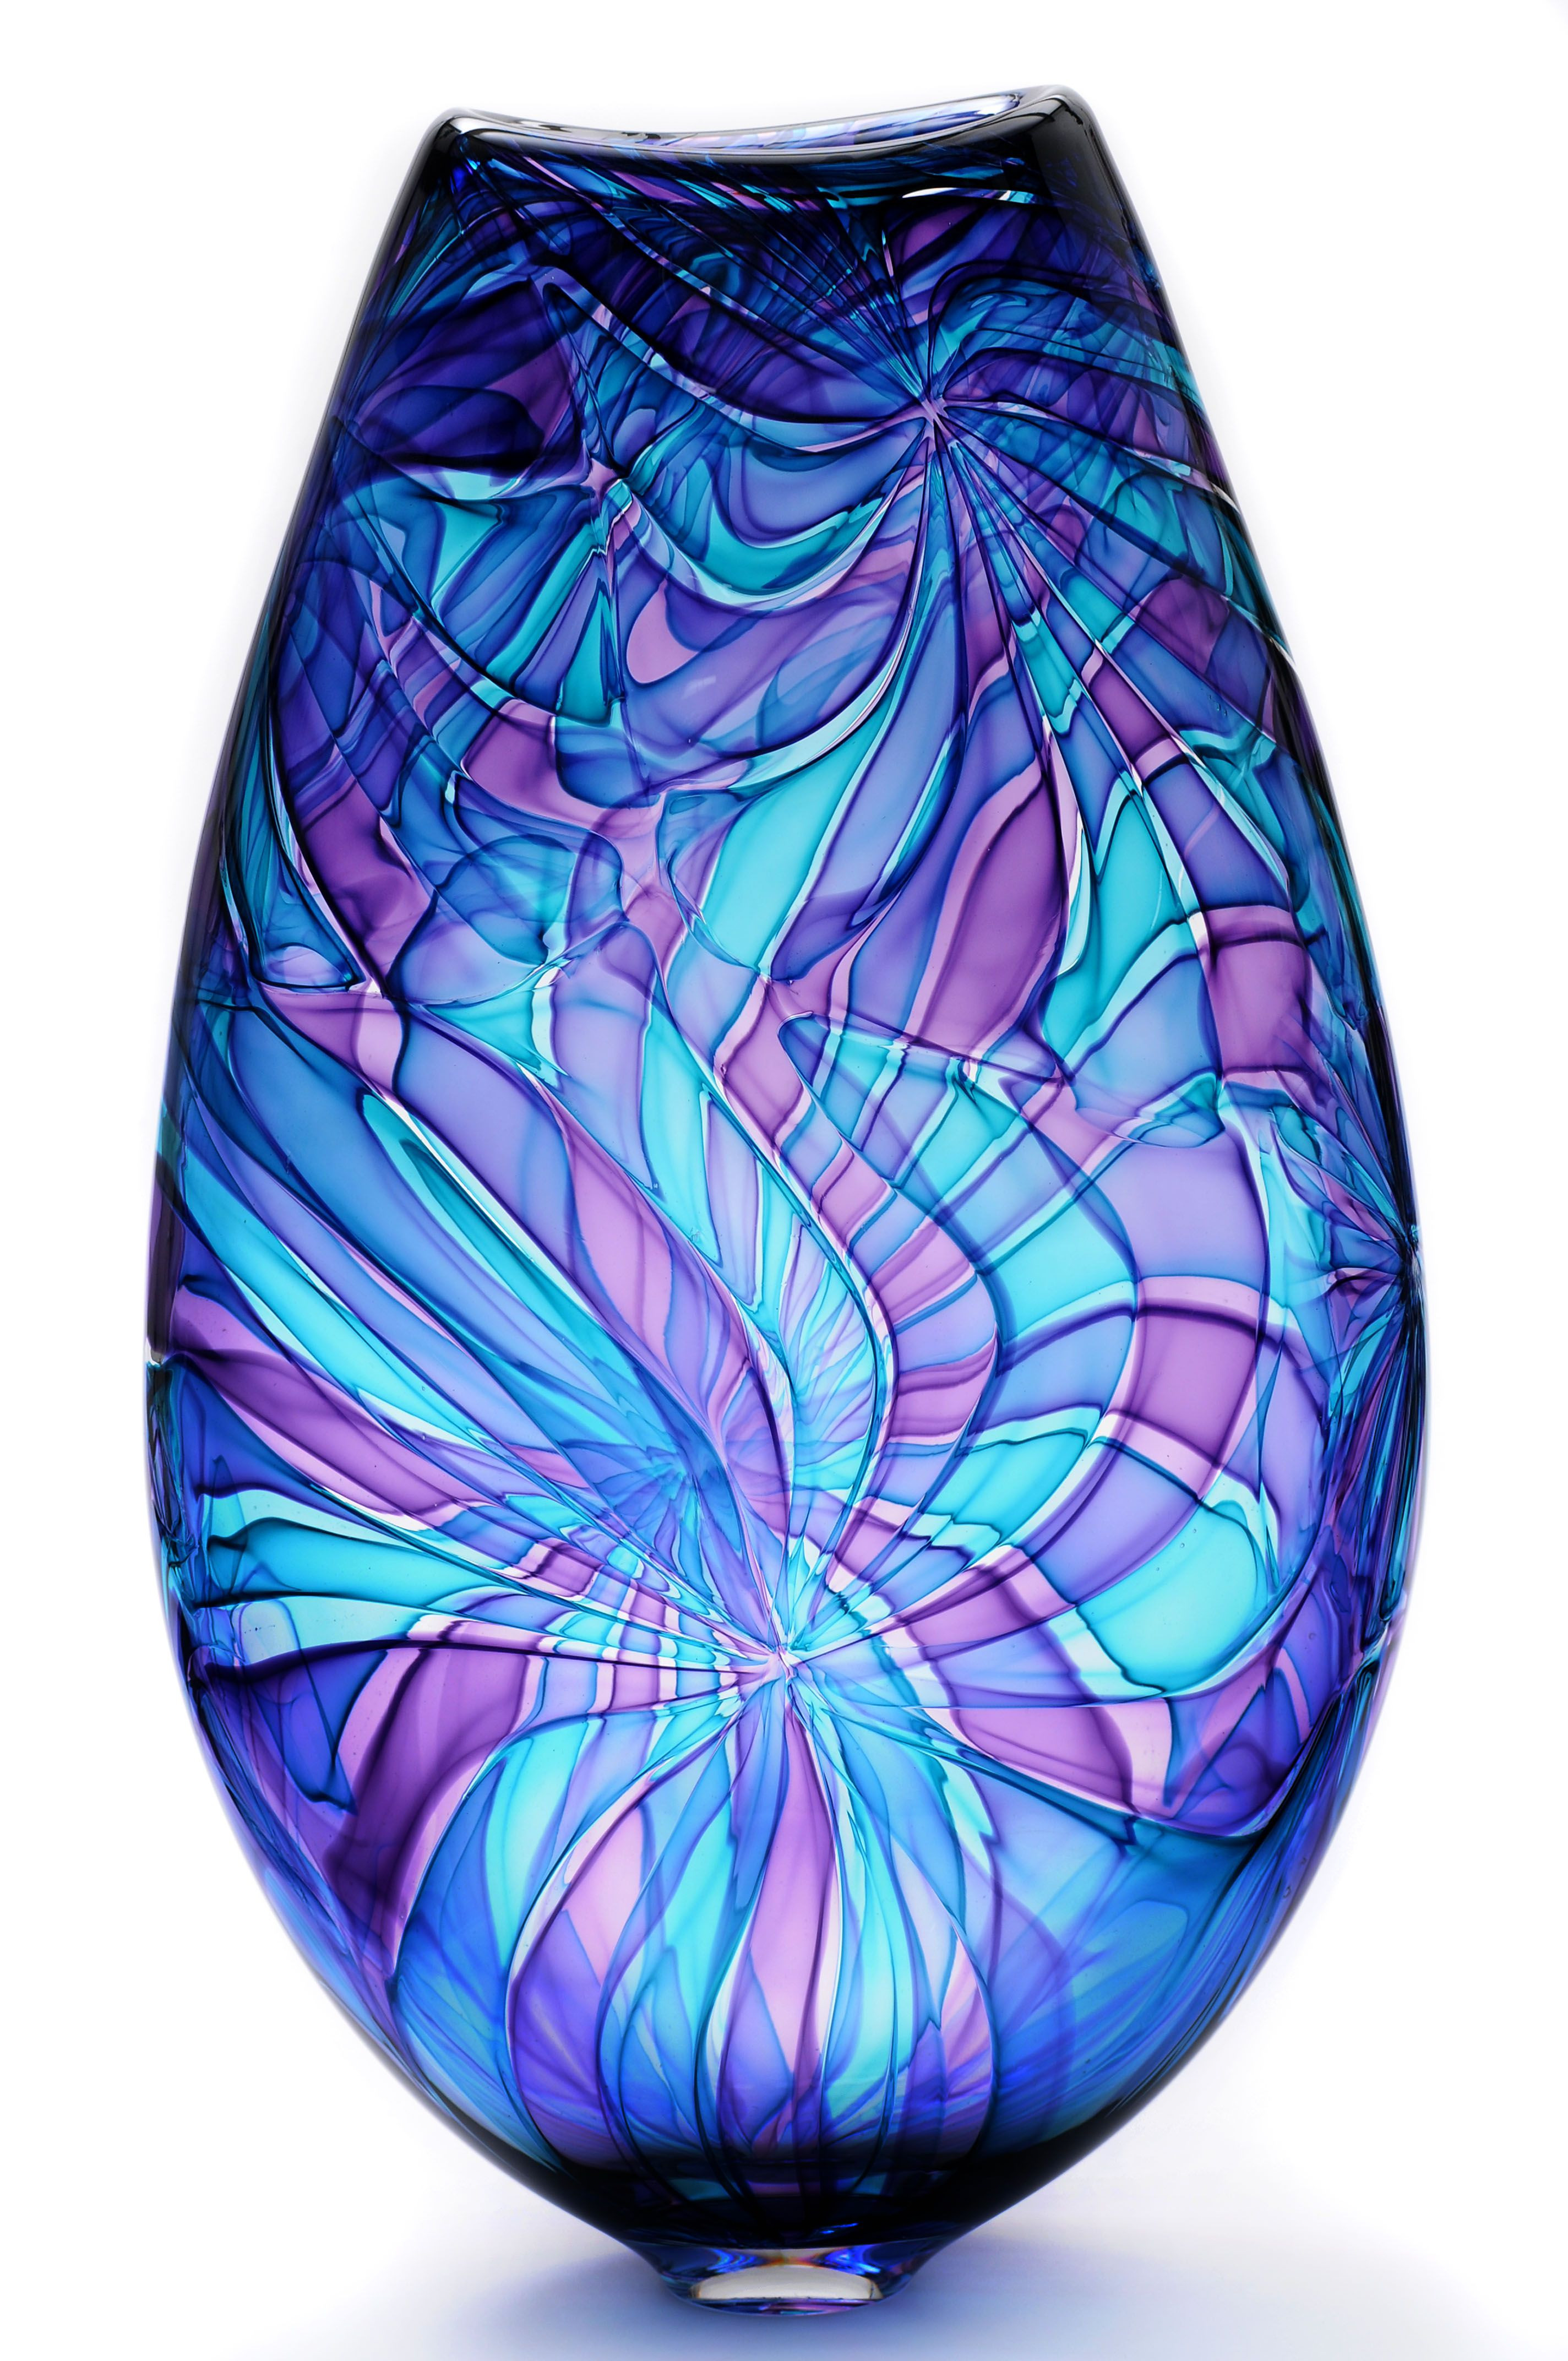 leaded glass vase of bob crooks glass art vase stained glass in 2018 regarding bob crooks glass art vase